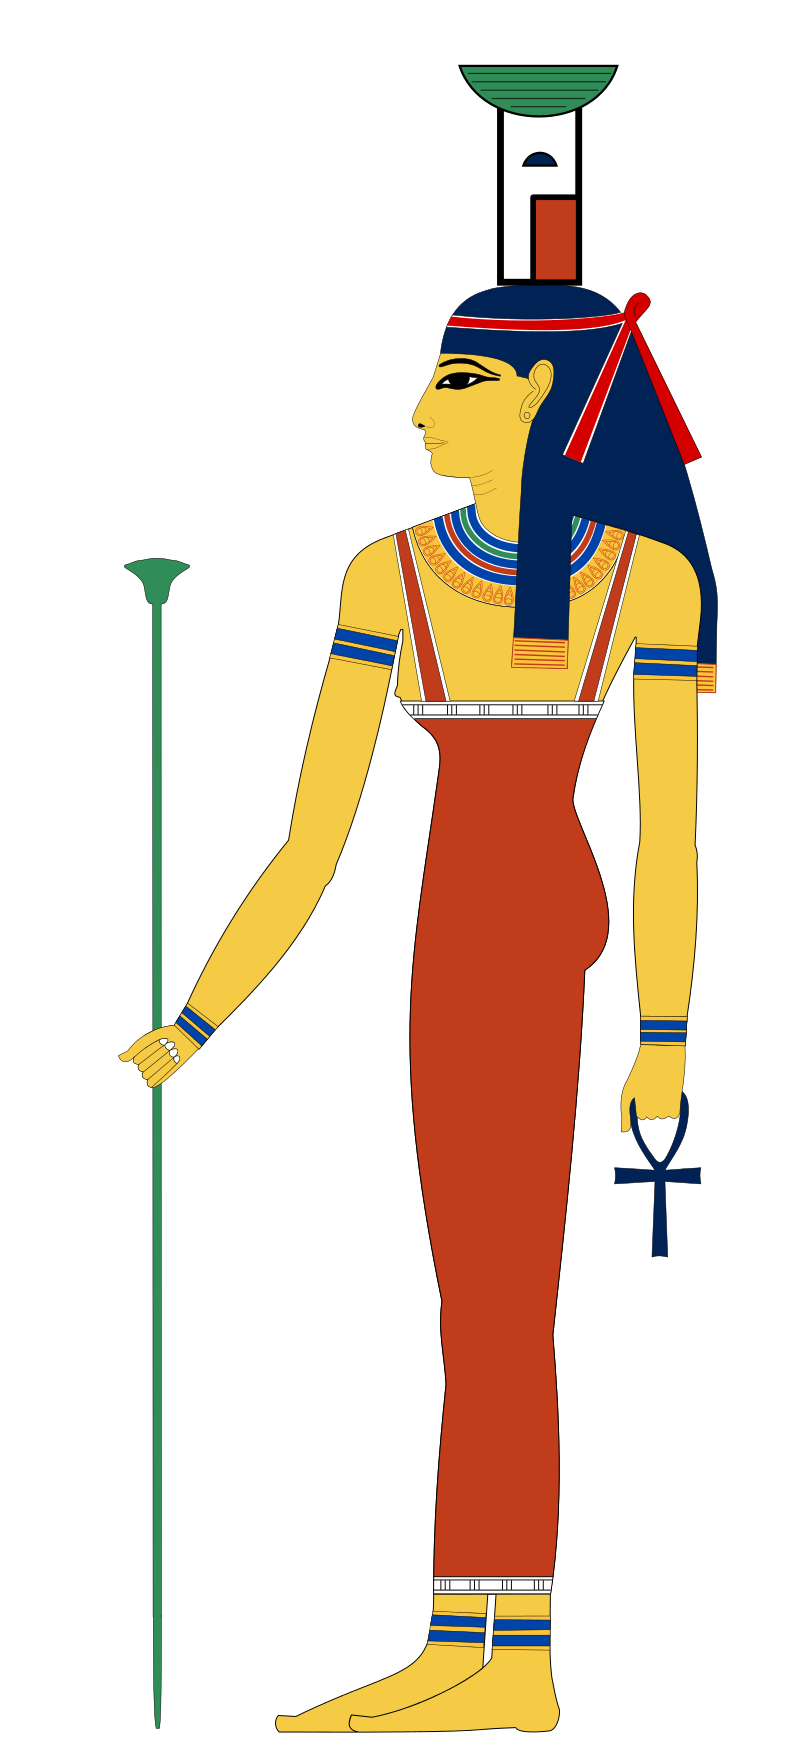 Representación de Neftis con sus atributos: el báculo, el anj y su característico tocado que representa una casa y una cesta.